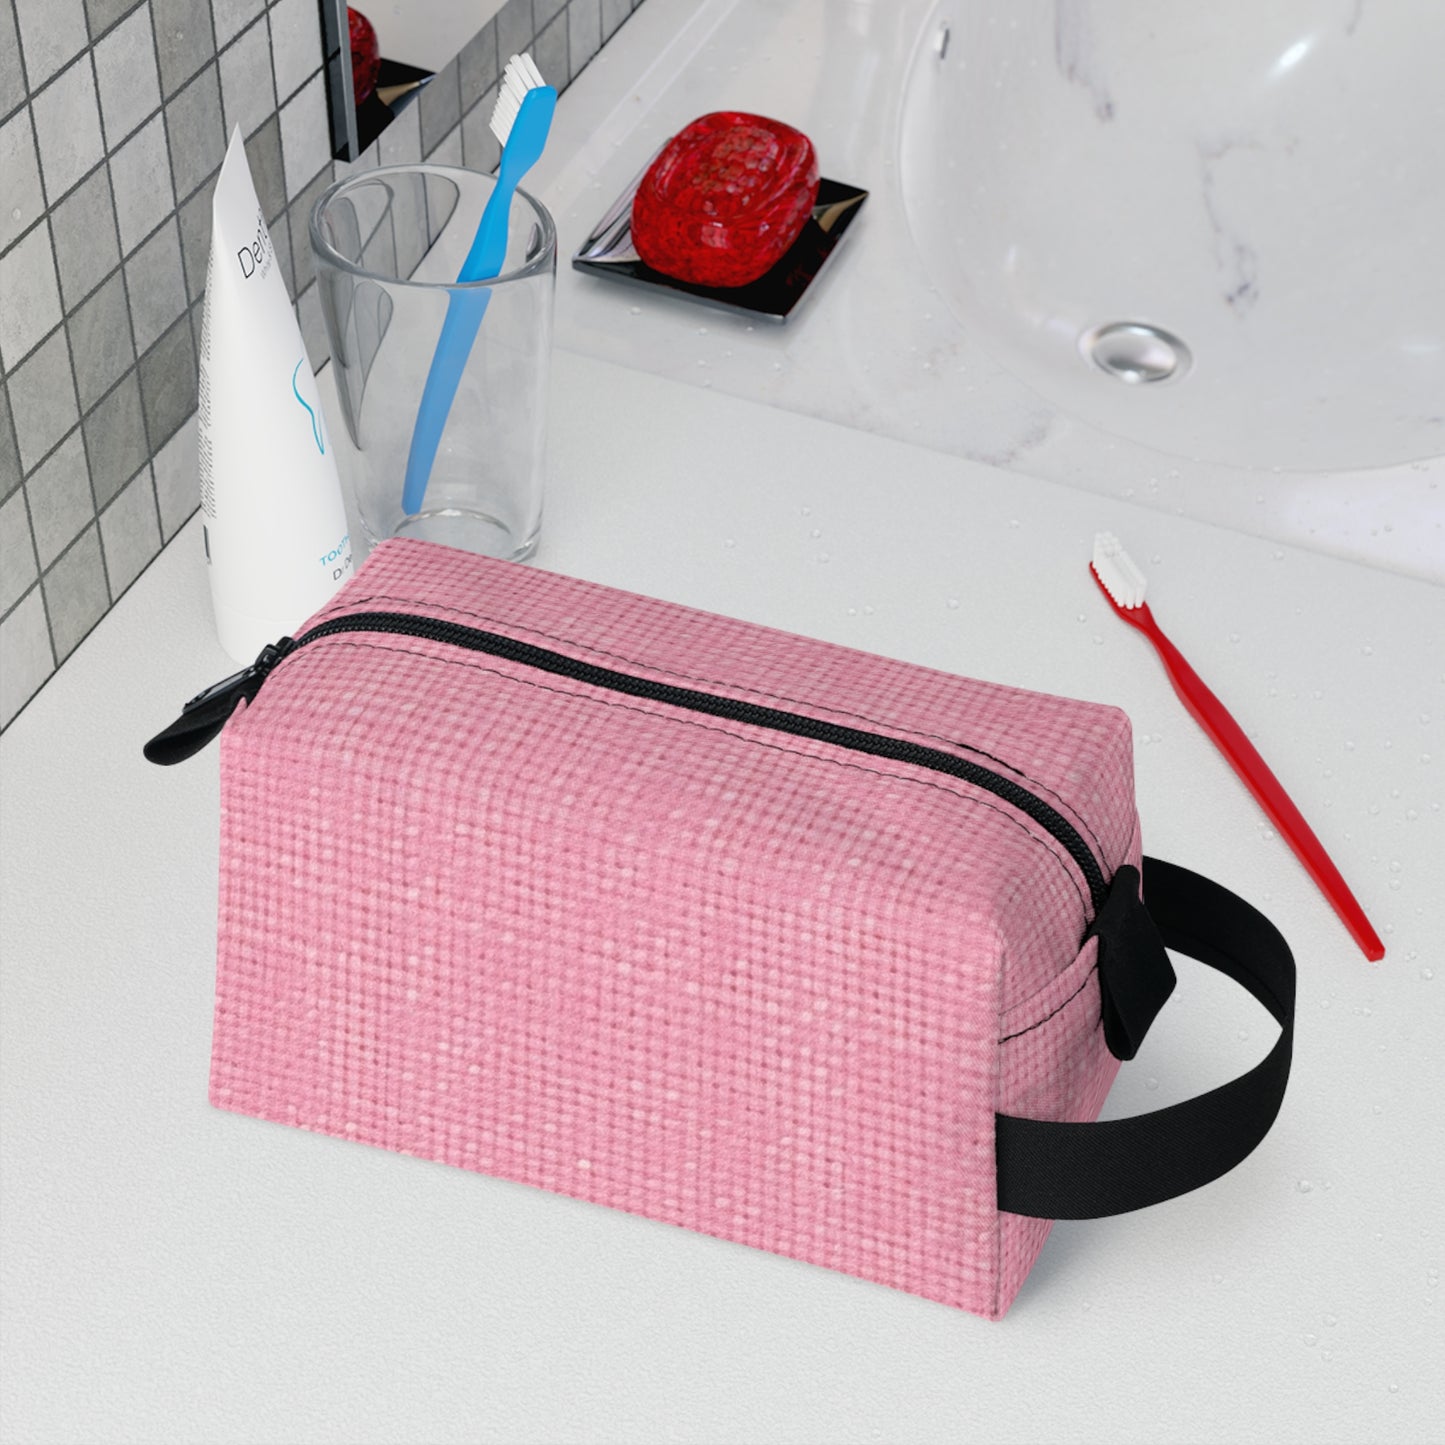 Pastel Rose Pink: Denim-Inspired, Refreshing Fabric Design - Toiletry Bag